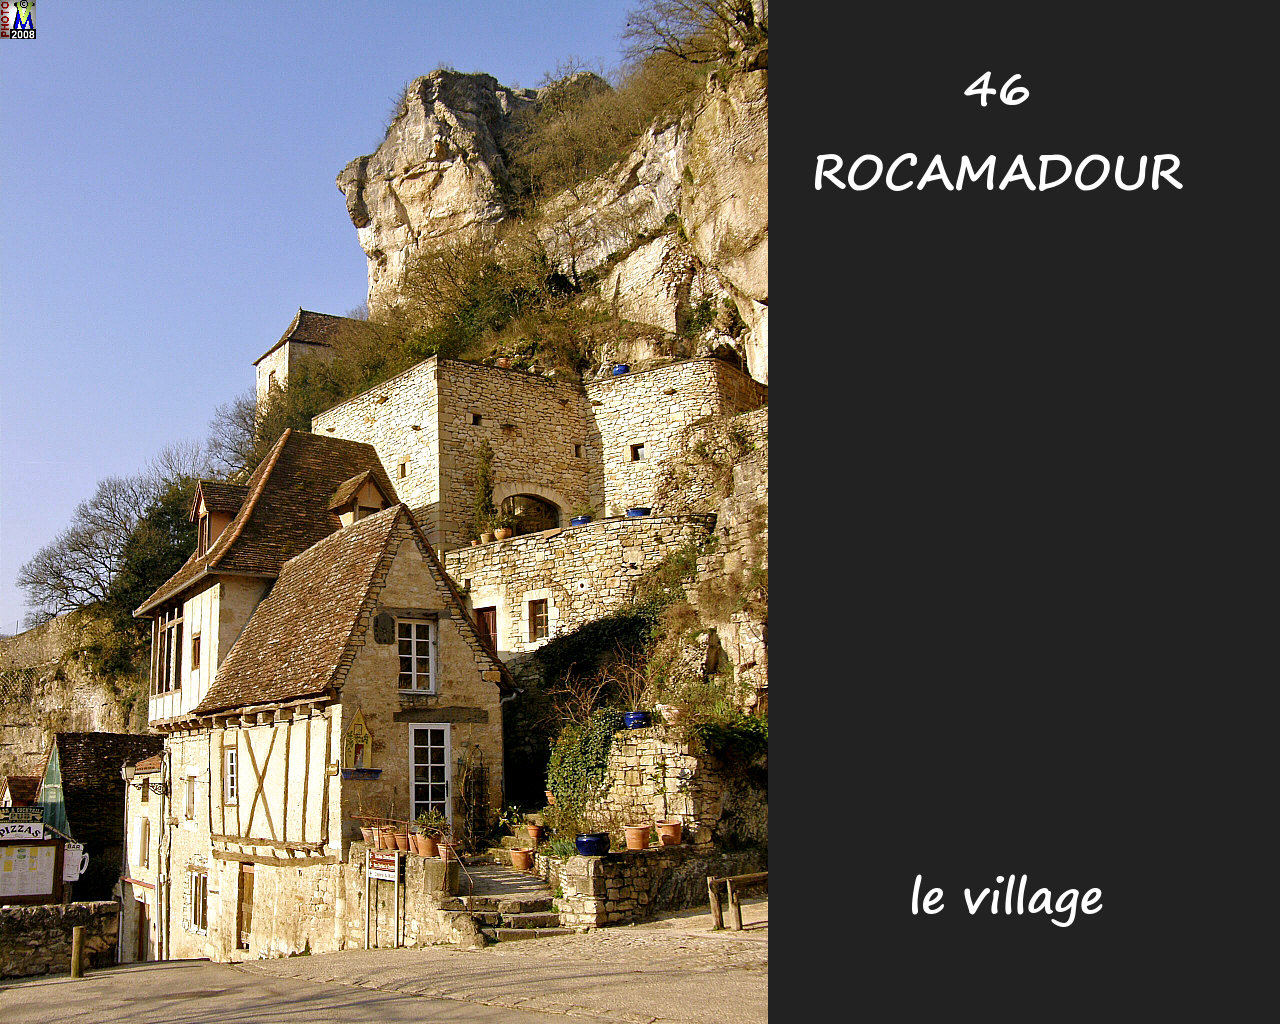 46ROCAMADOUR_village_126.jpg